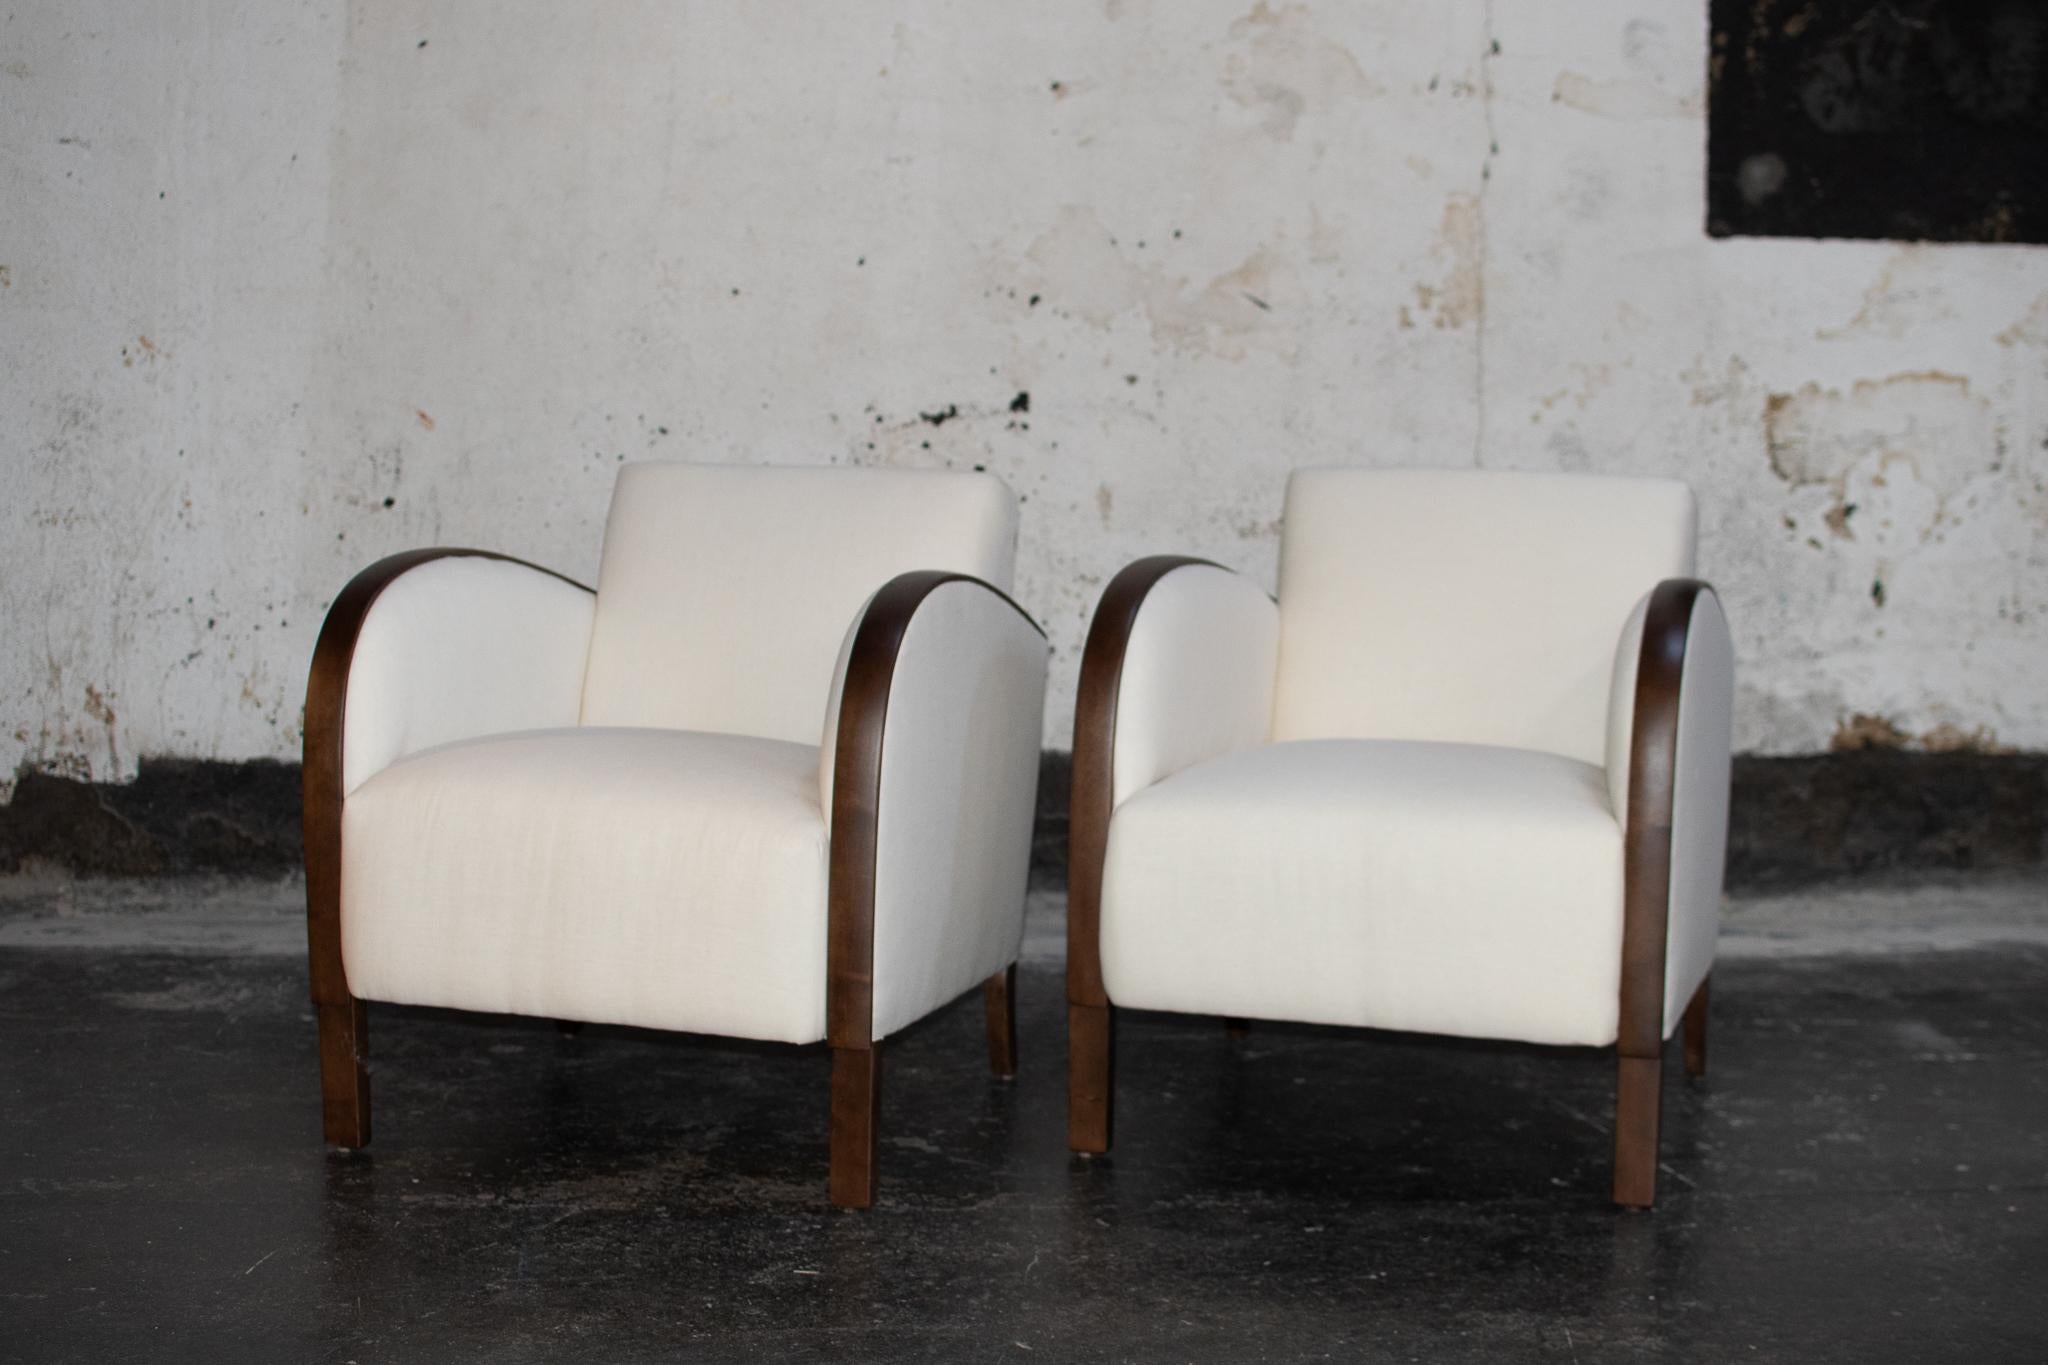 Paire de fauteuils club suédois Art déco ou Art moderne. Le petit cadre et le style de la baignoire conviennent parfaitement aux espaces restreints. Kalle Anka se traduit à peu près par 